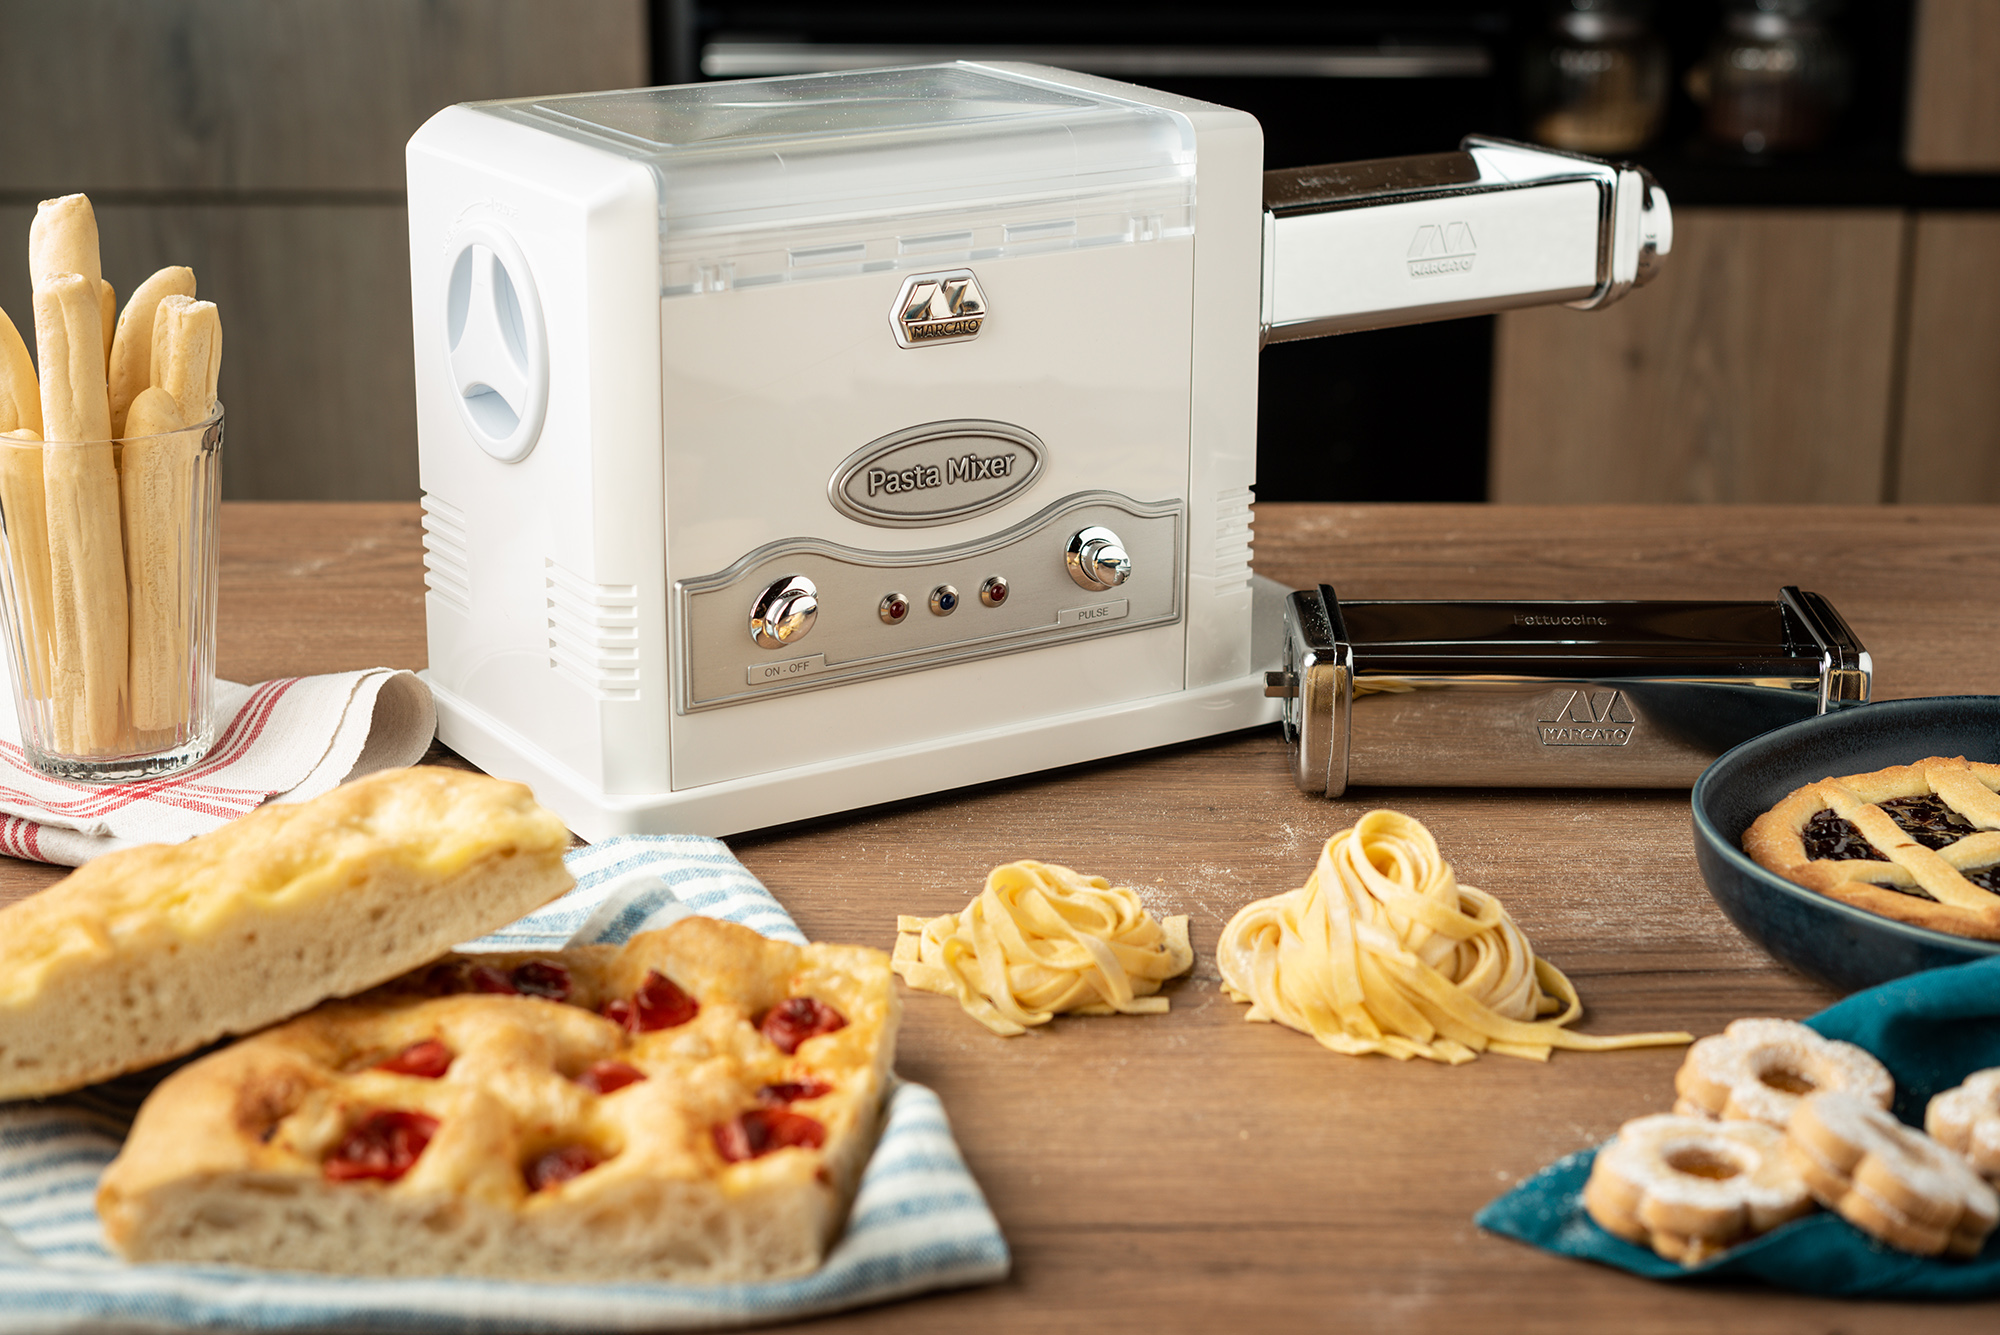 Sotel  Marcato Pasta Fresca Electric pasta machine